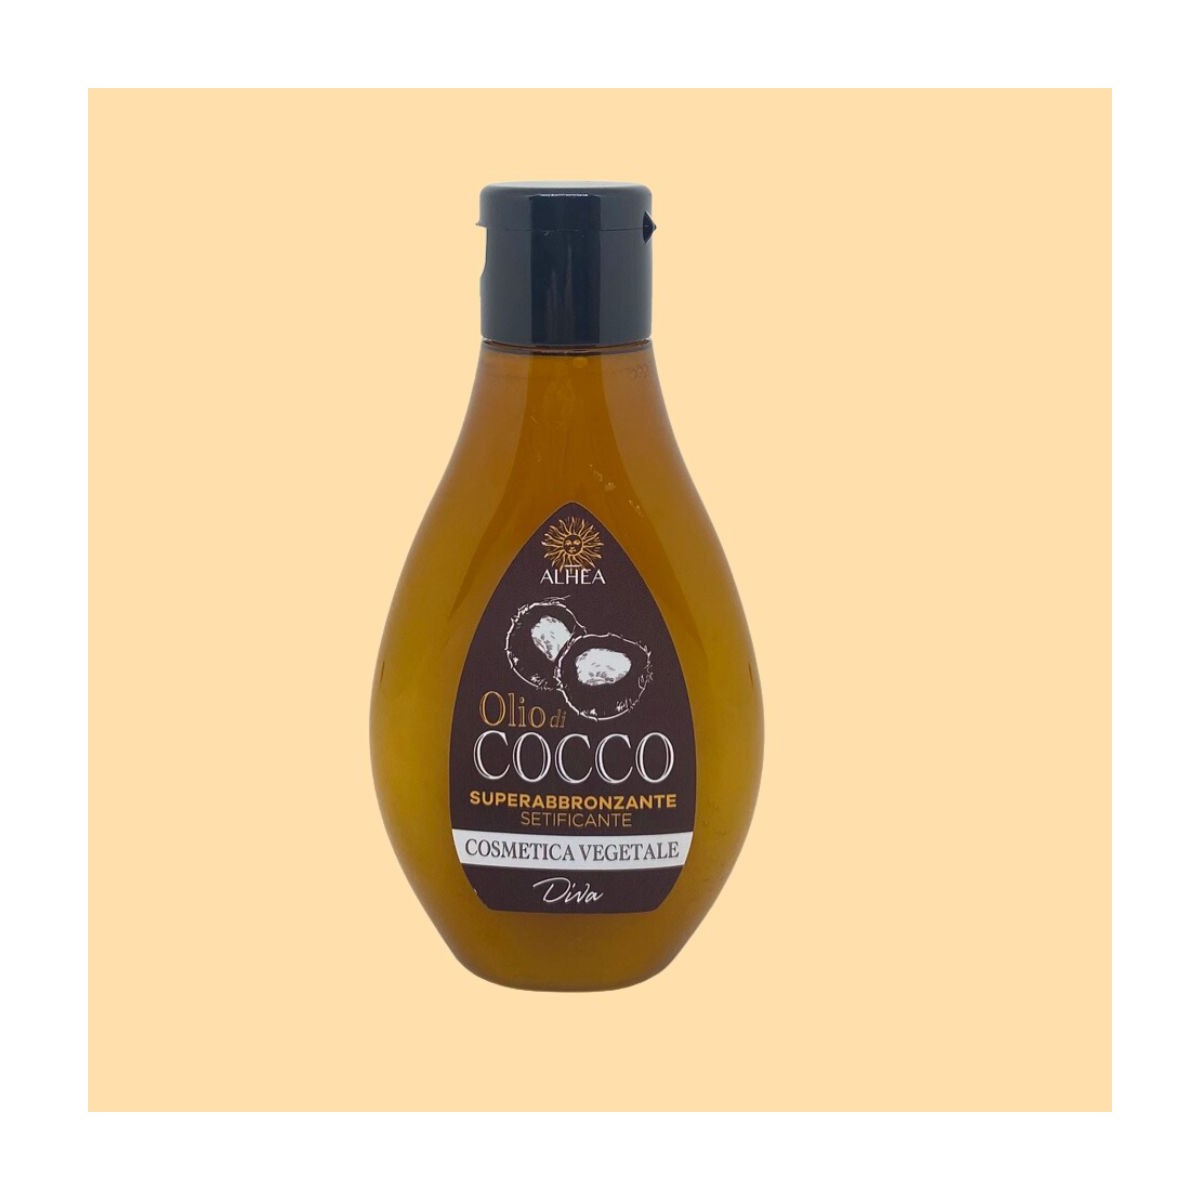 Solares al mejor precio: ALHEA Aceite de Coco Superbronceador 100ml de Diva Distribuzione en Skin Thinks - Piel Seca